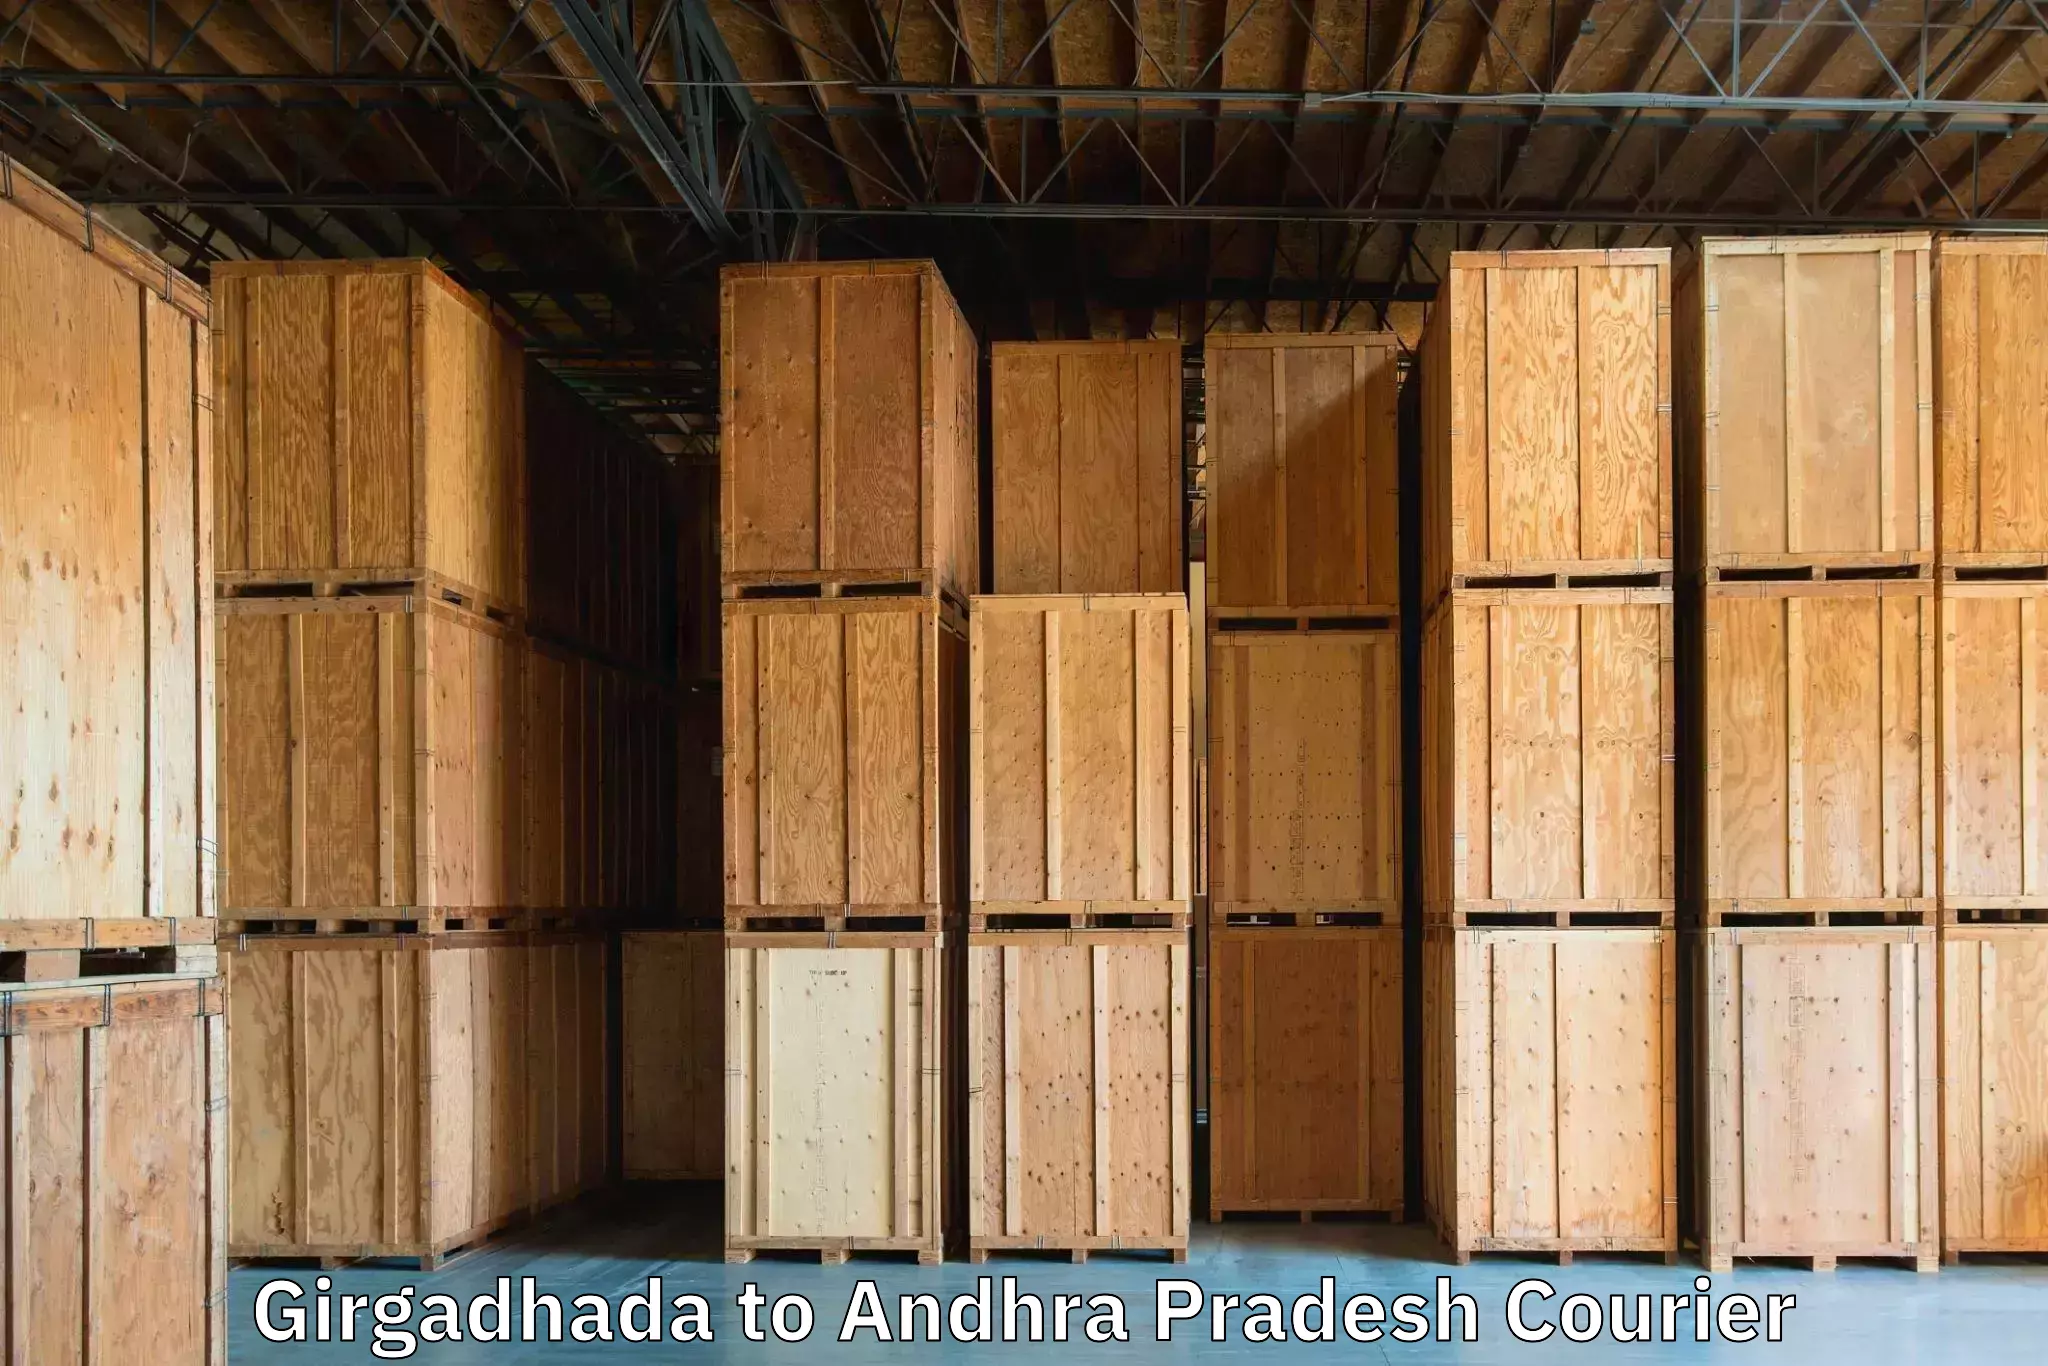 Luggage shipment strategy Girgadhada to Kukunoor